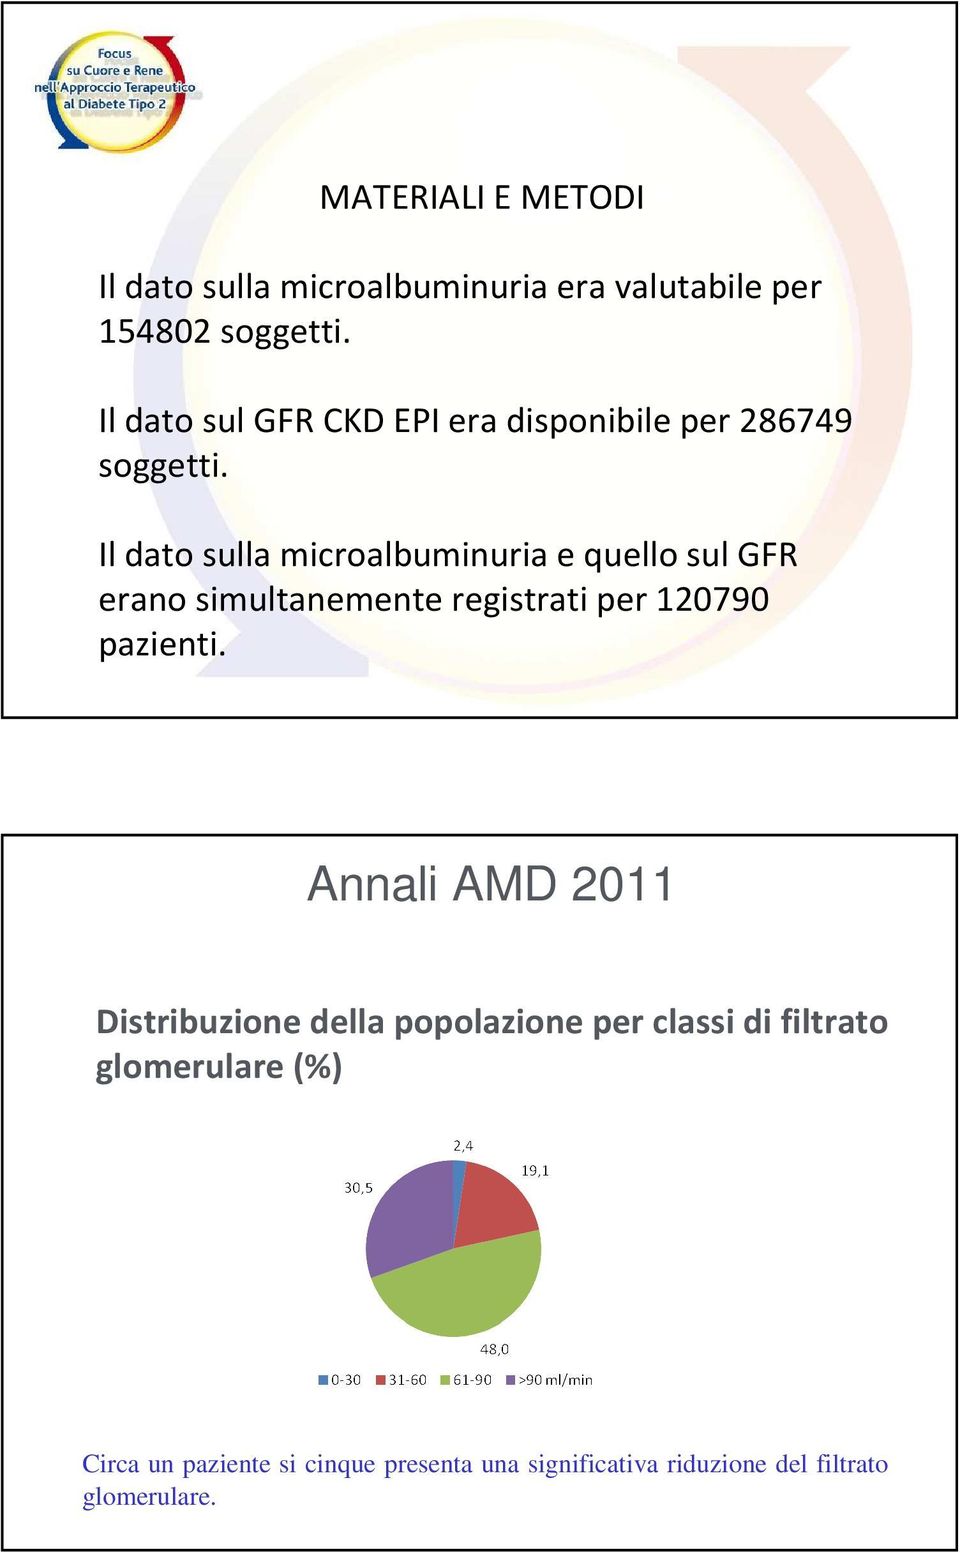 Il dato sulla microalbuminuria e quello sul GFR erano simultanemente registrati per 120790 pazienti.